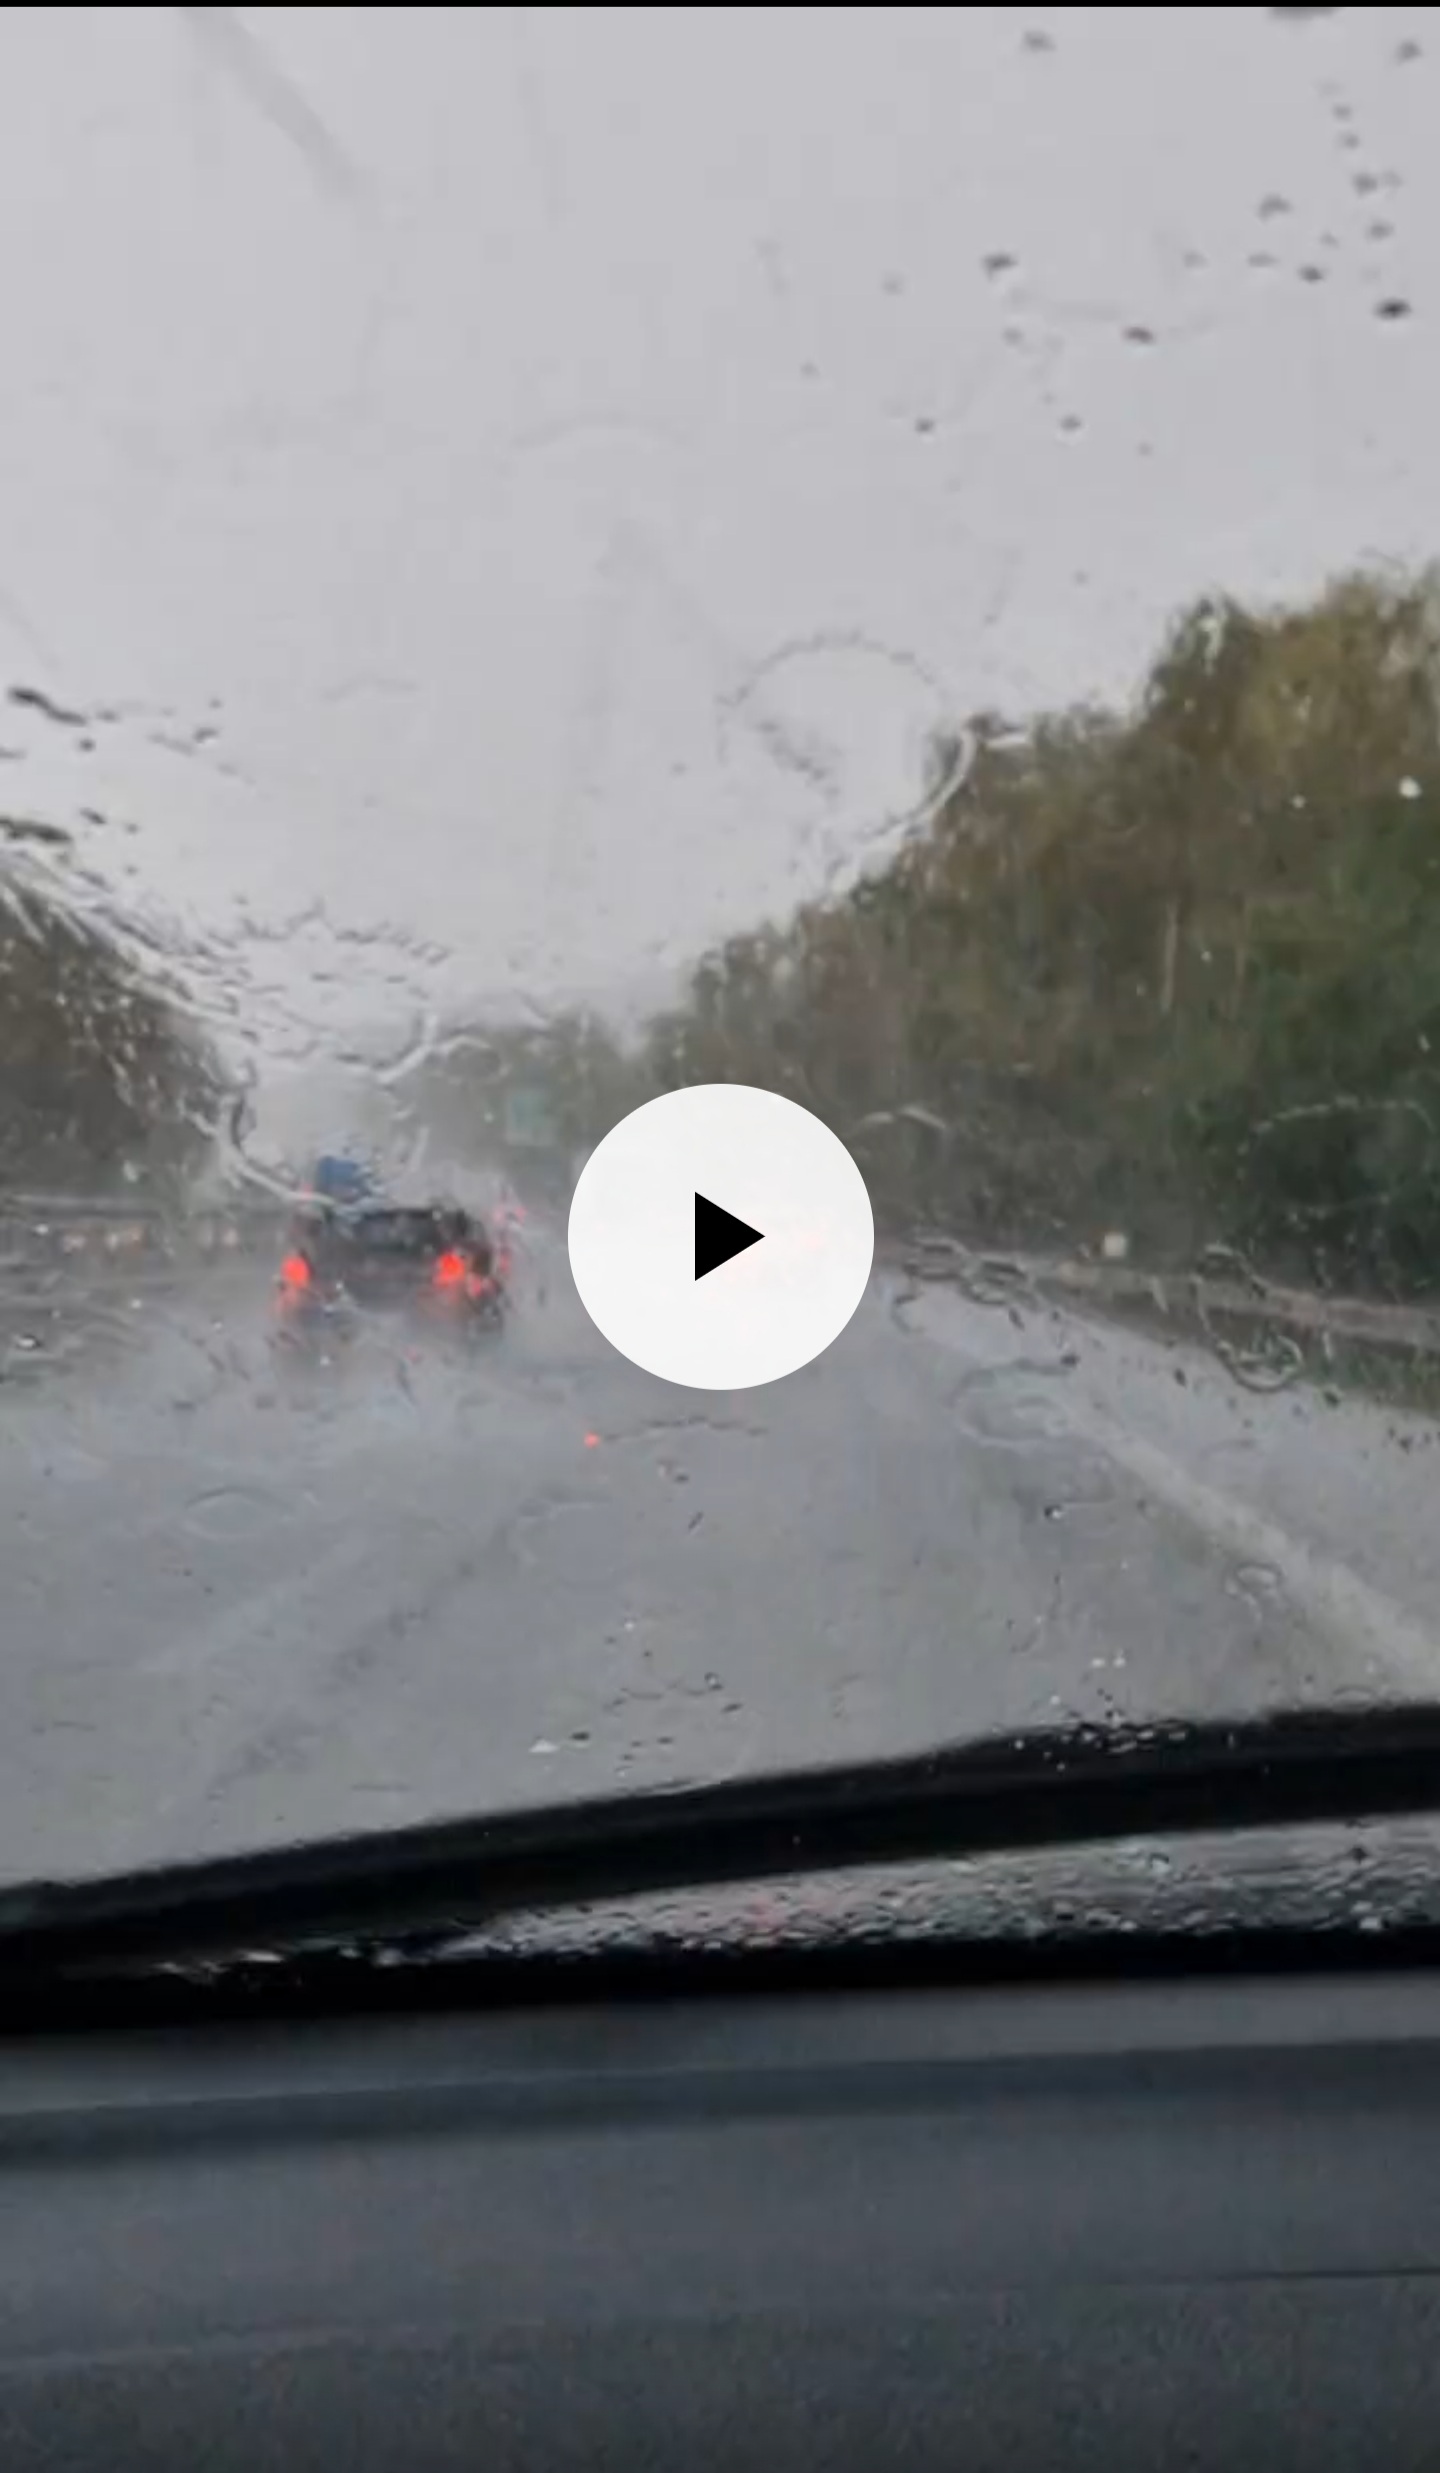 Meteo Sicilia: intensa grandinata sull'autostrada A19 tra Altavilla Milicia e Trabia